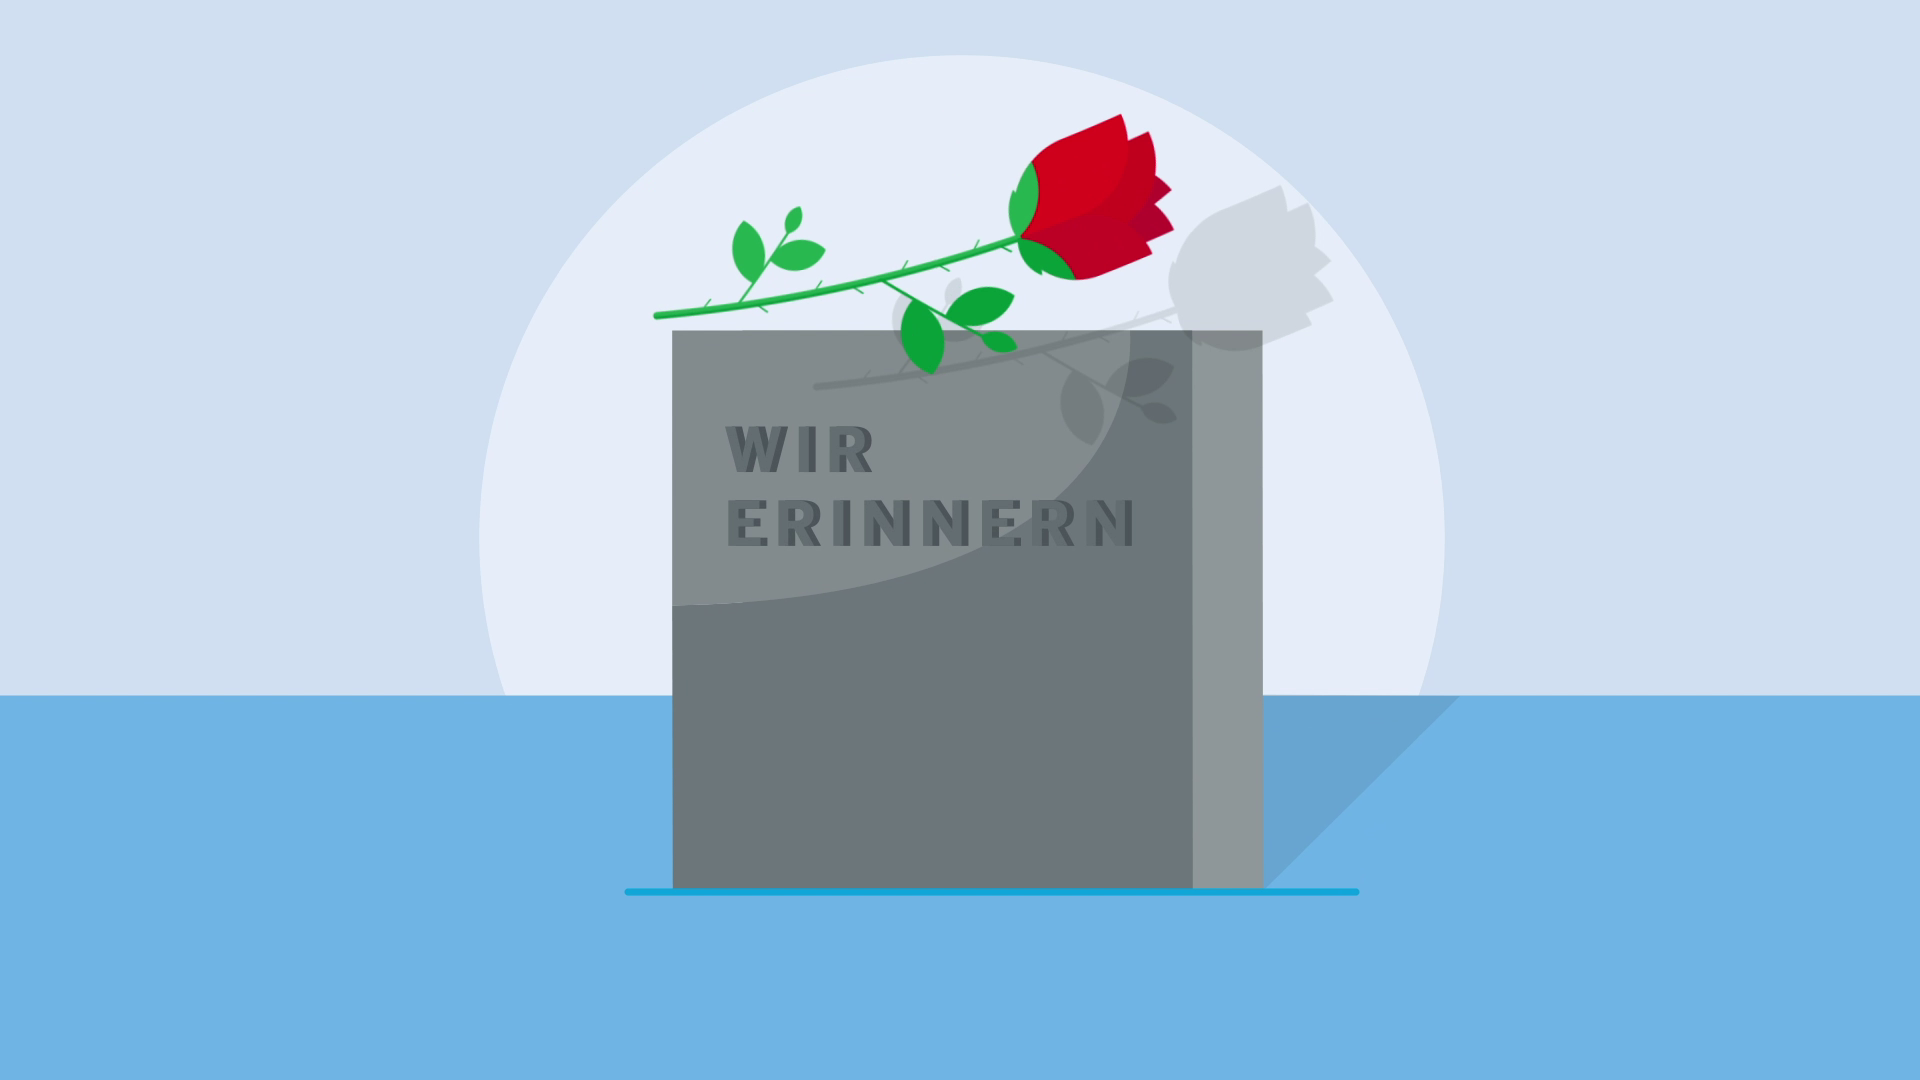 Grafik: Ein Stein mit der Schrift "Wir erinnern" und darauf eine rote Rose